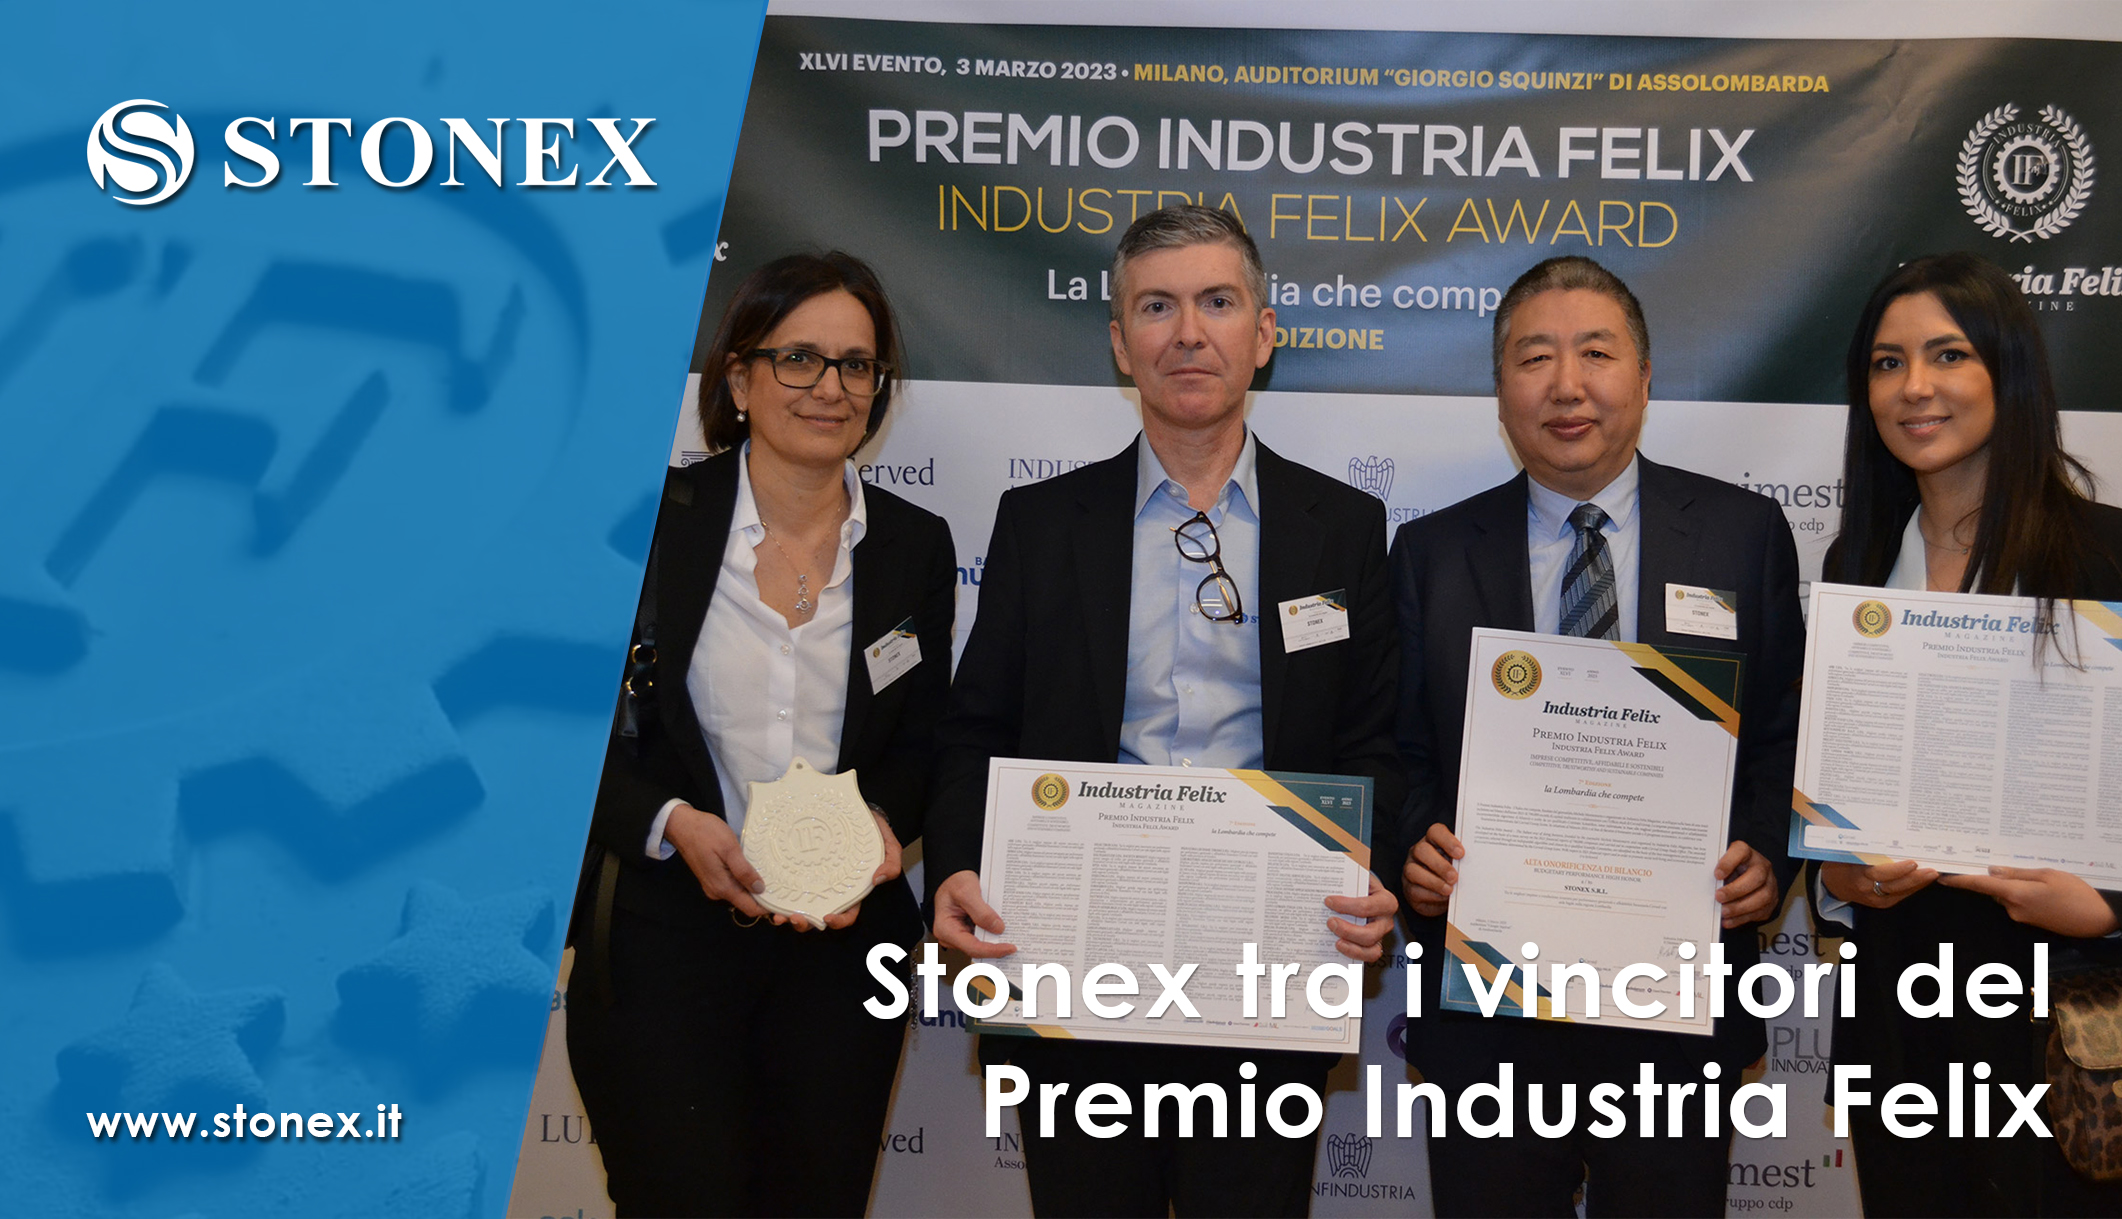 Stonex tra i vincitori del “Premio Industria Felix, Lombardia: le 54 imprese più competitive”